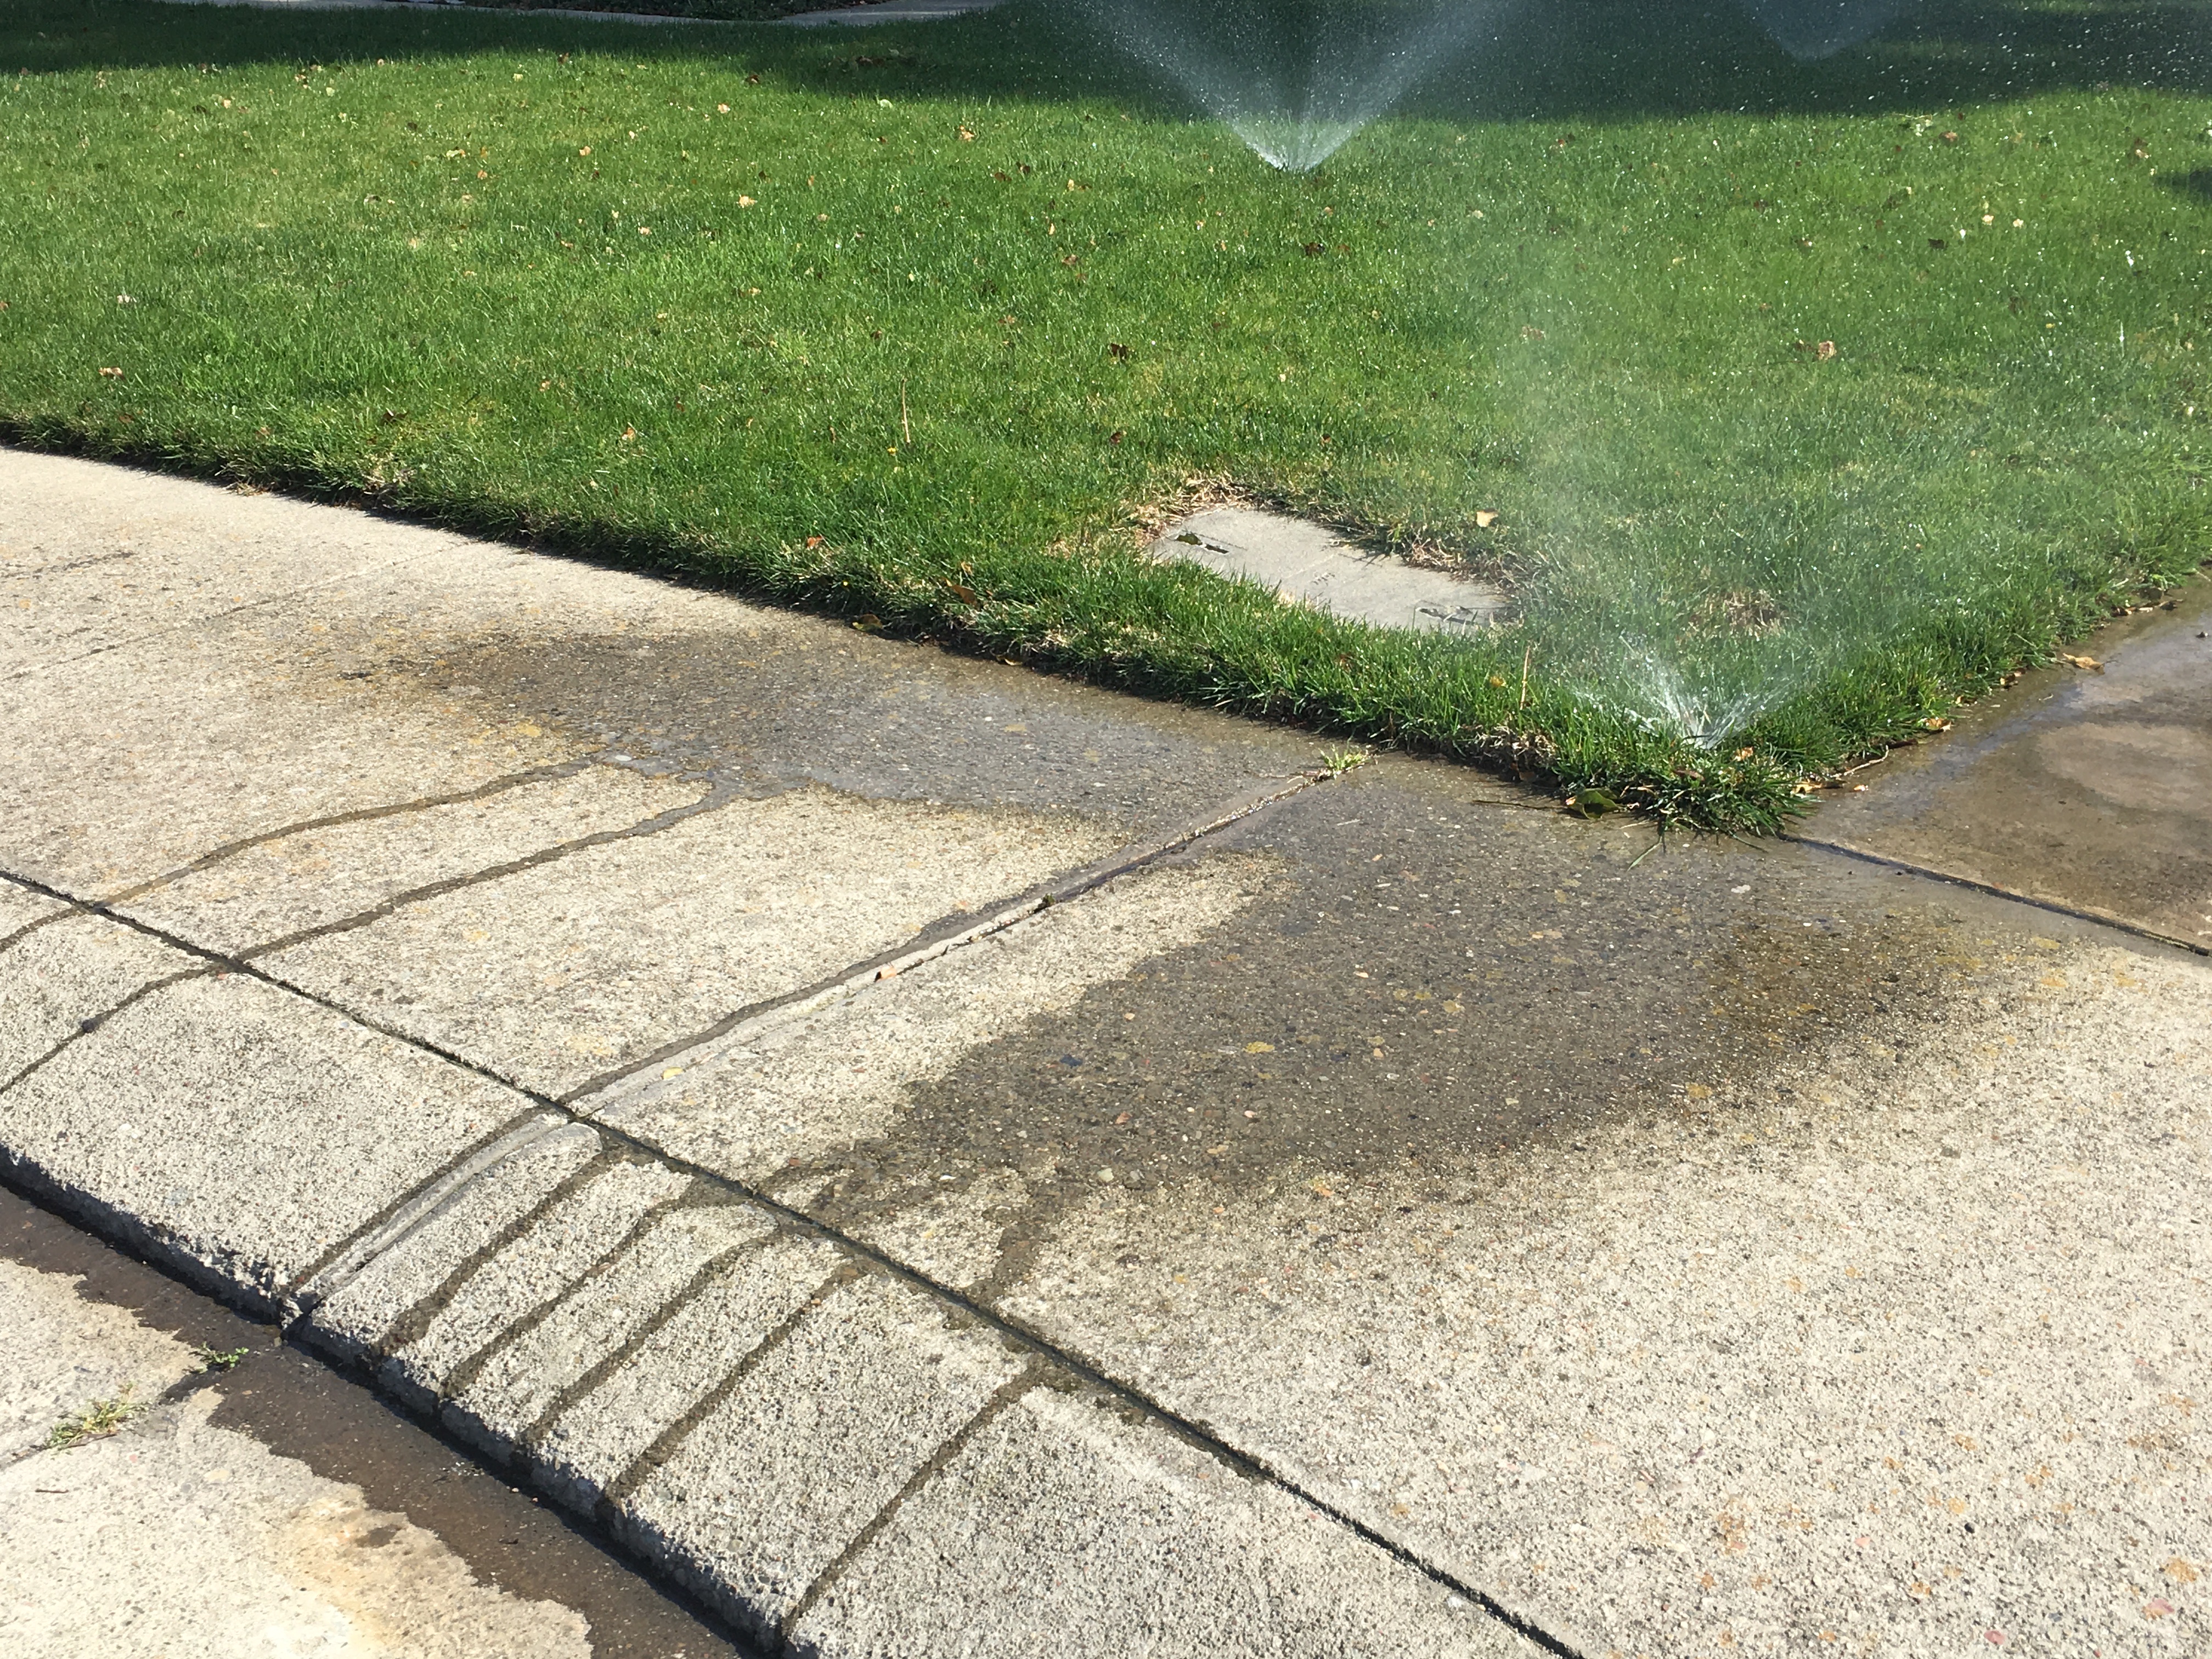 sprinklers overspraying water